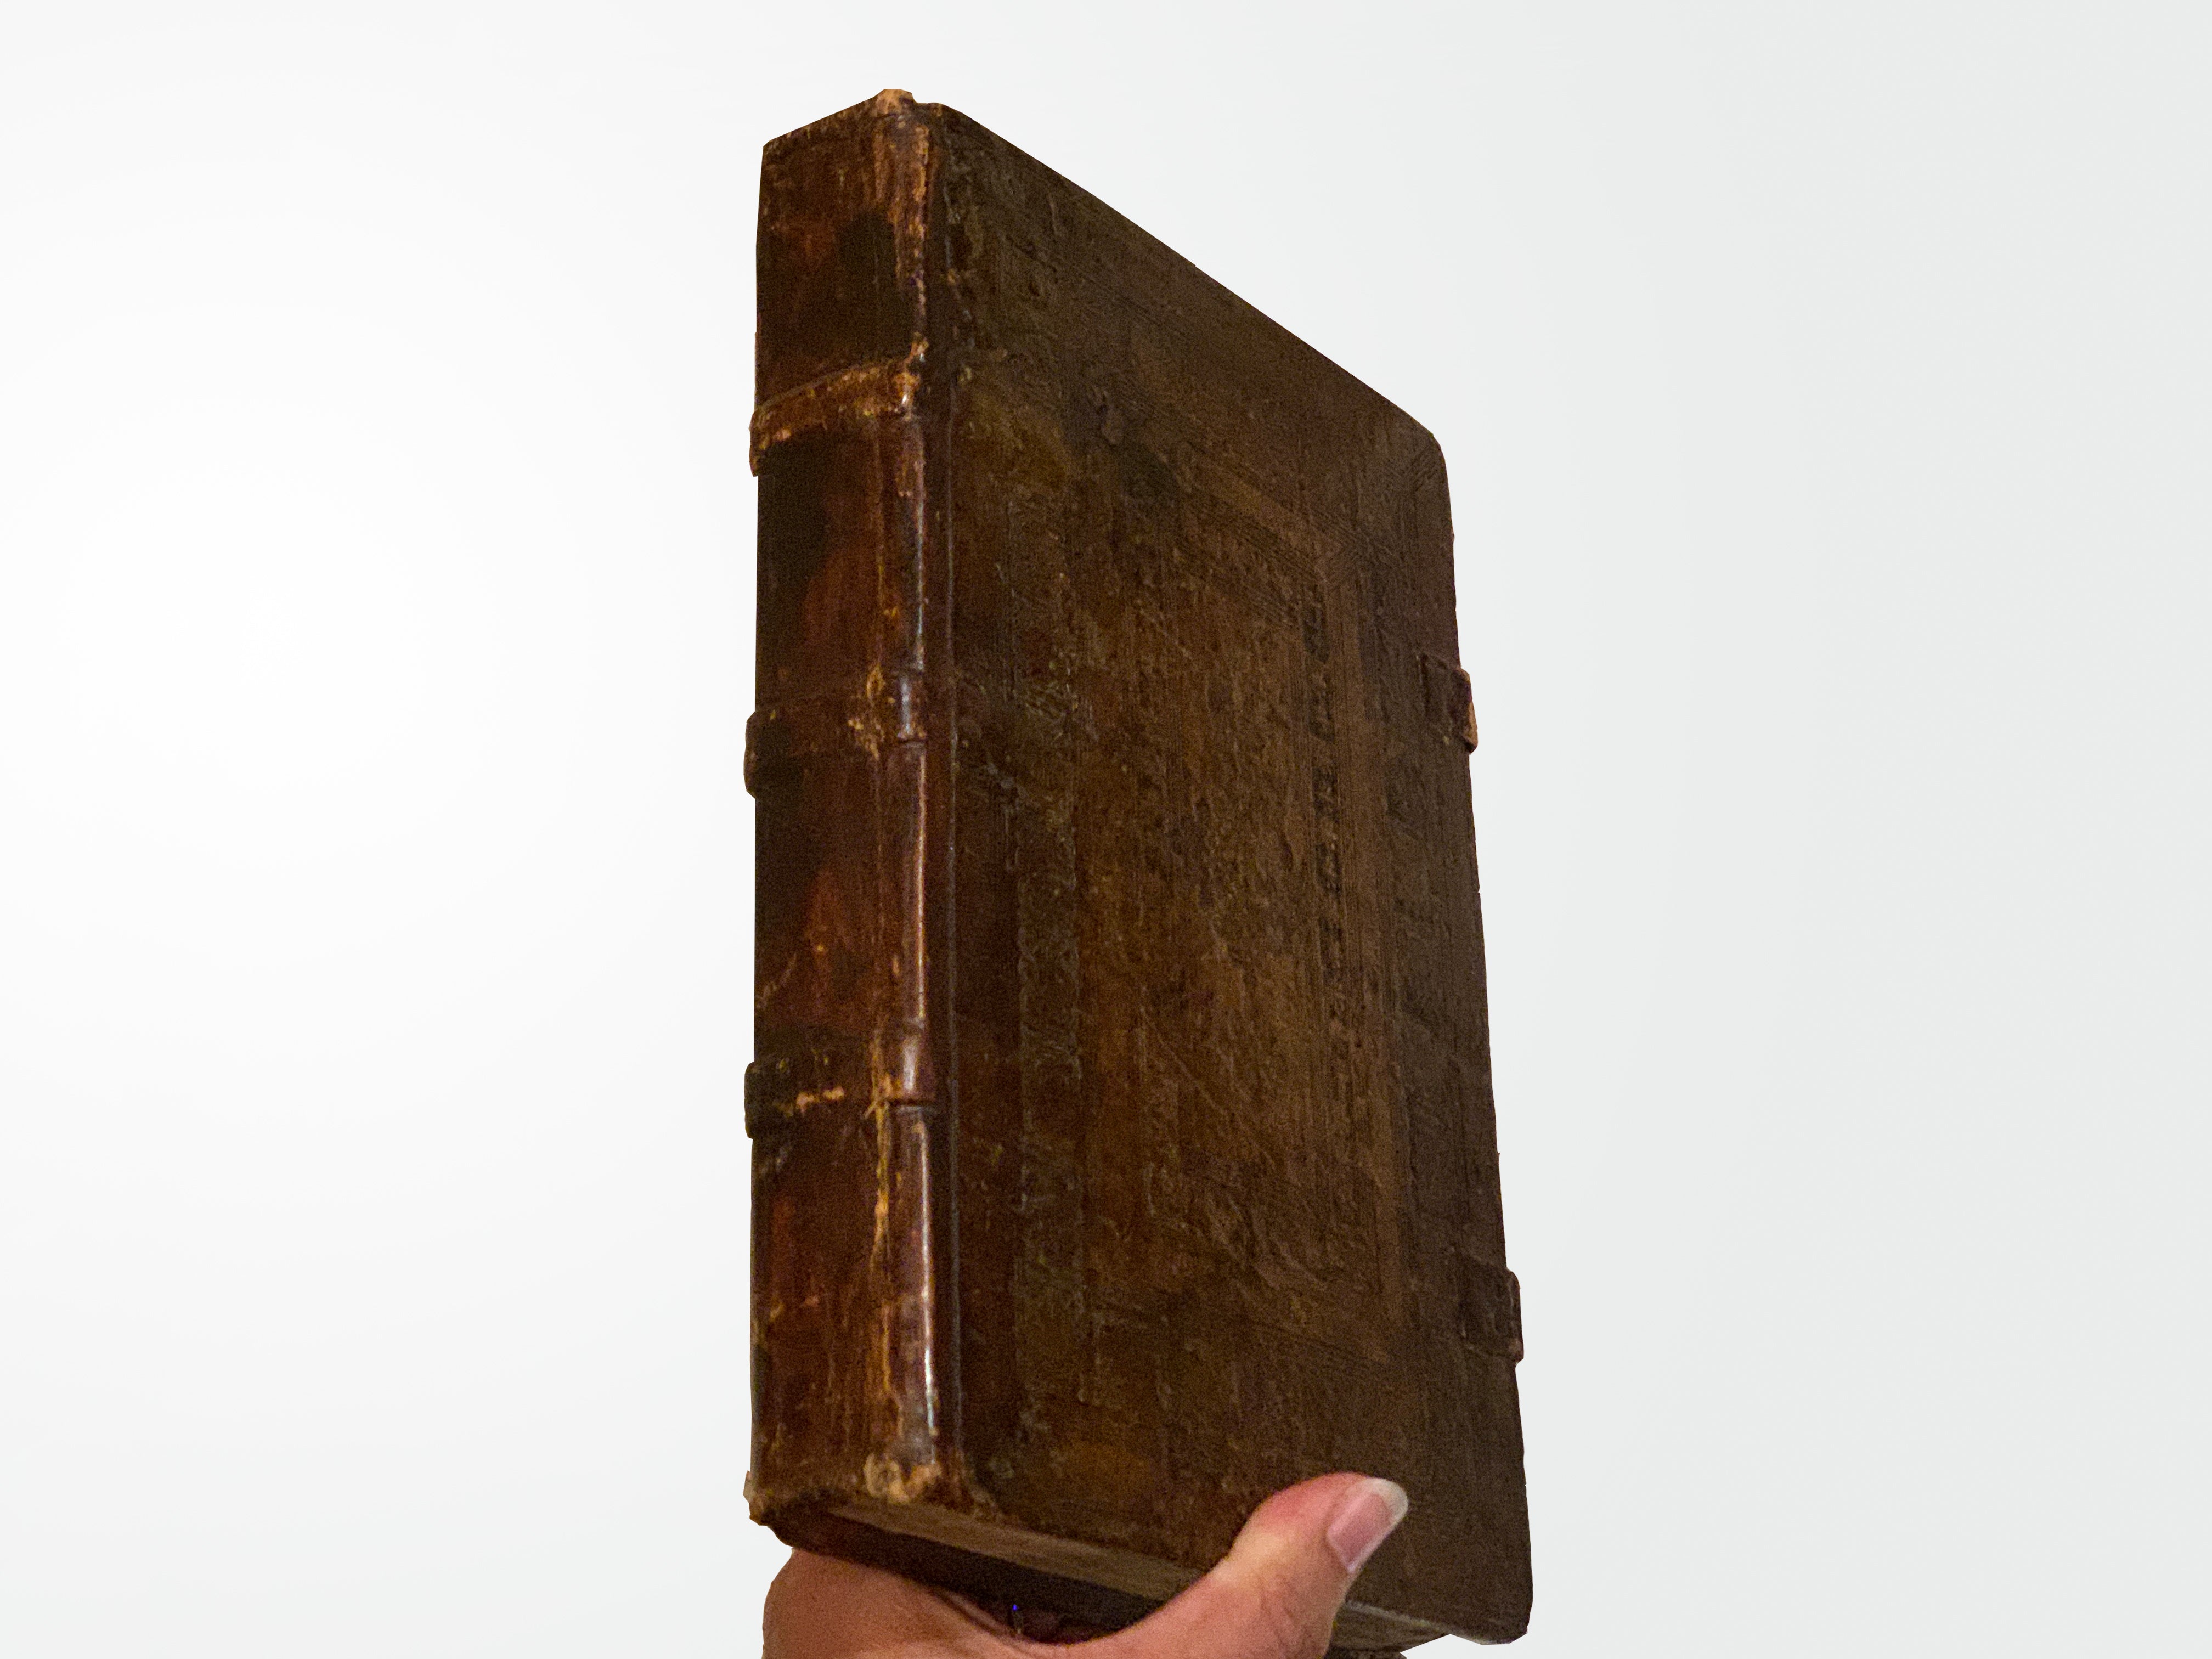 De Civitate Dei by Aurelius Augustinus, Latin, Incunabula, Leather, RARE, 1486